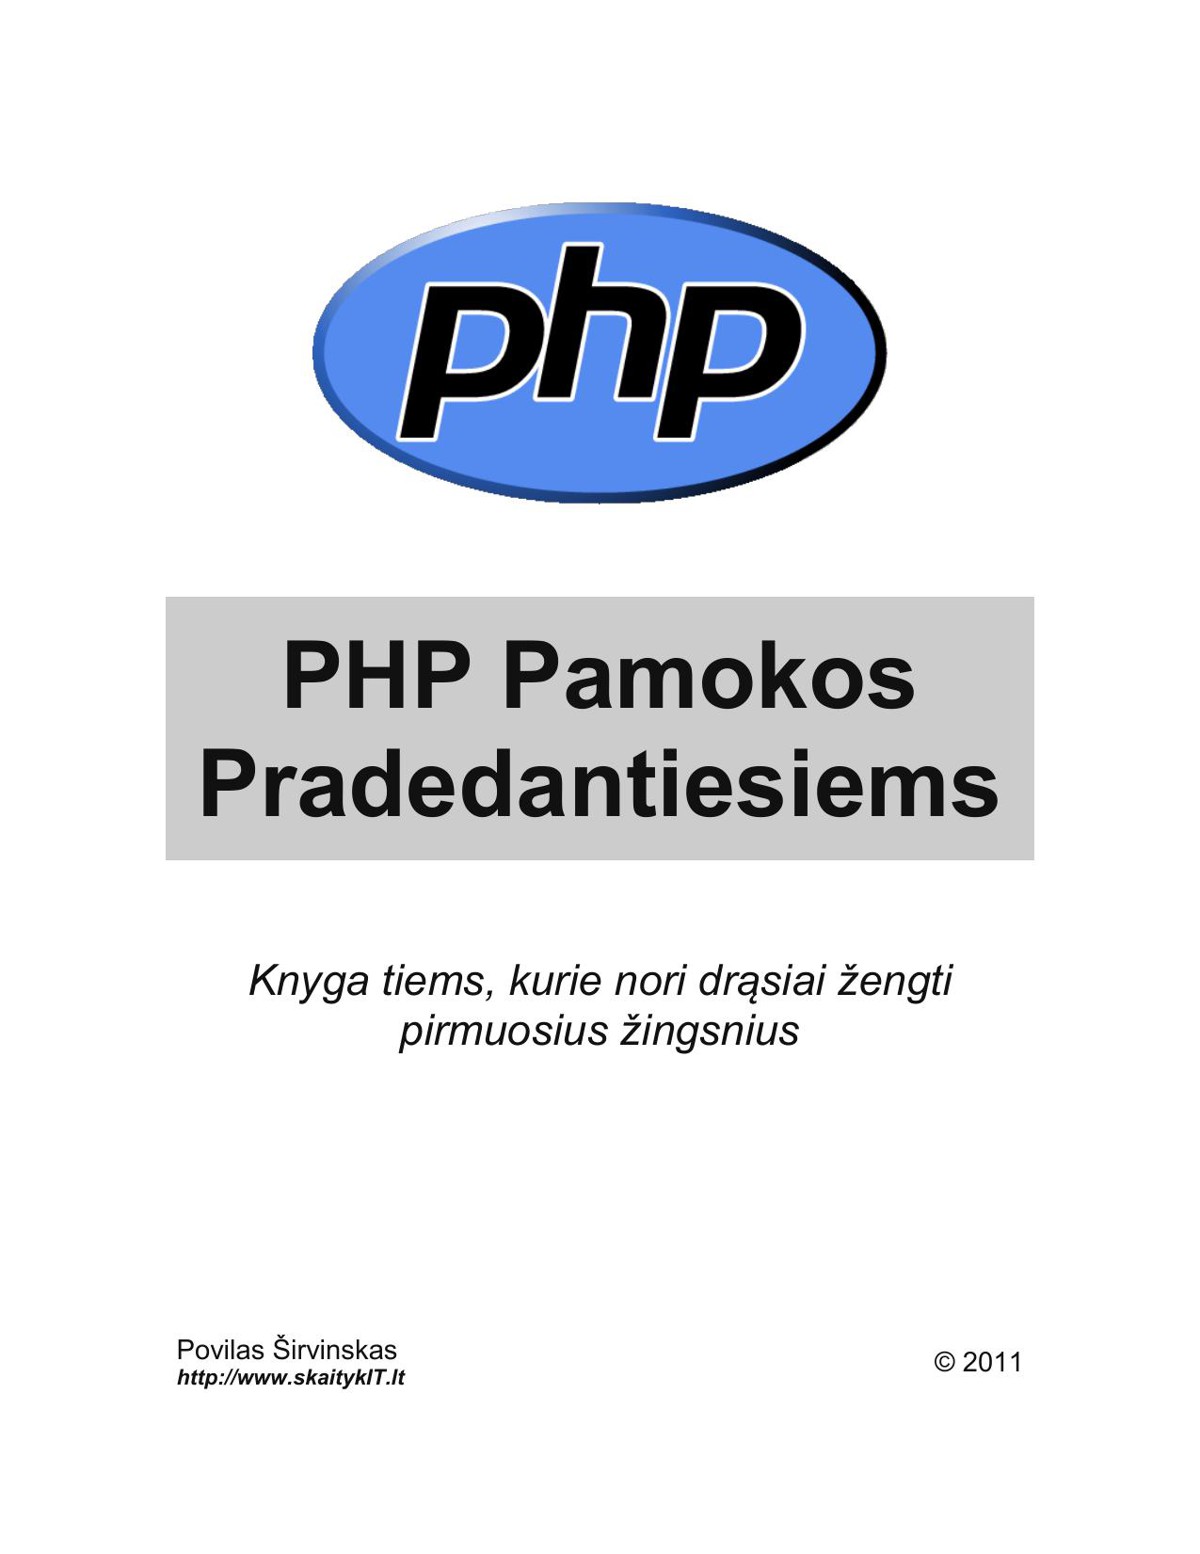 PHP Pamokos pradedantiesiems